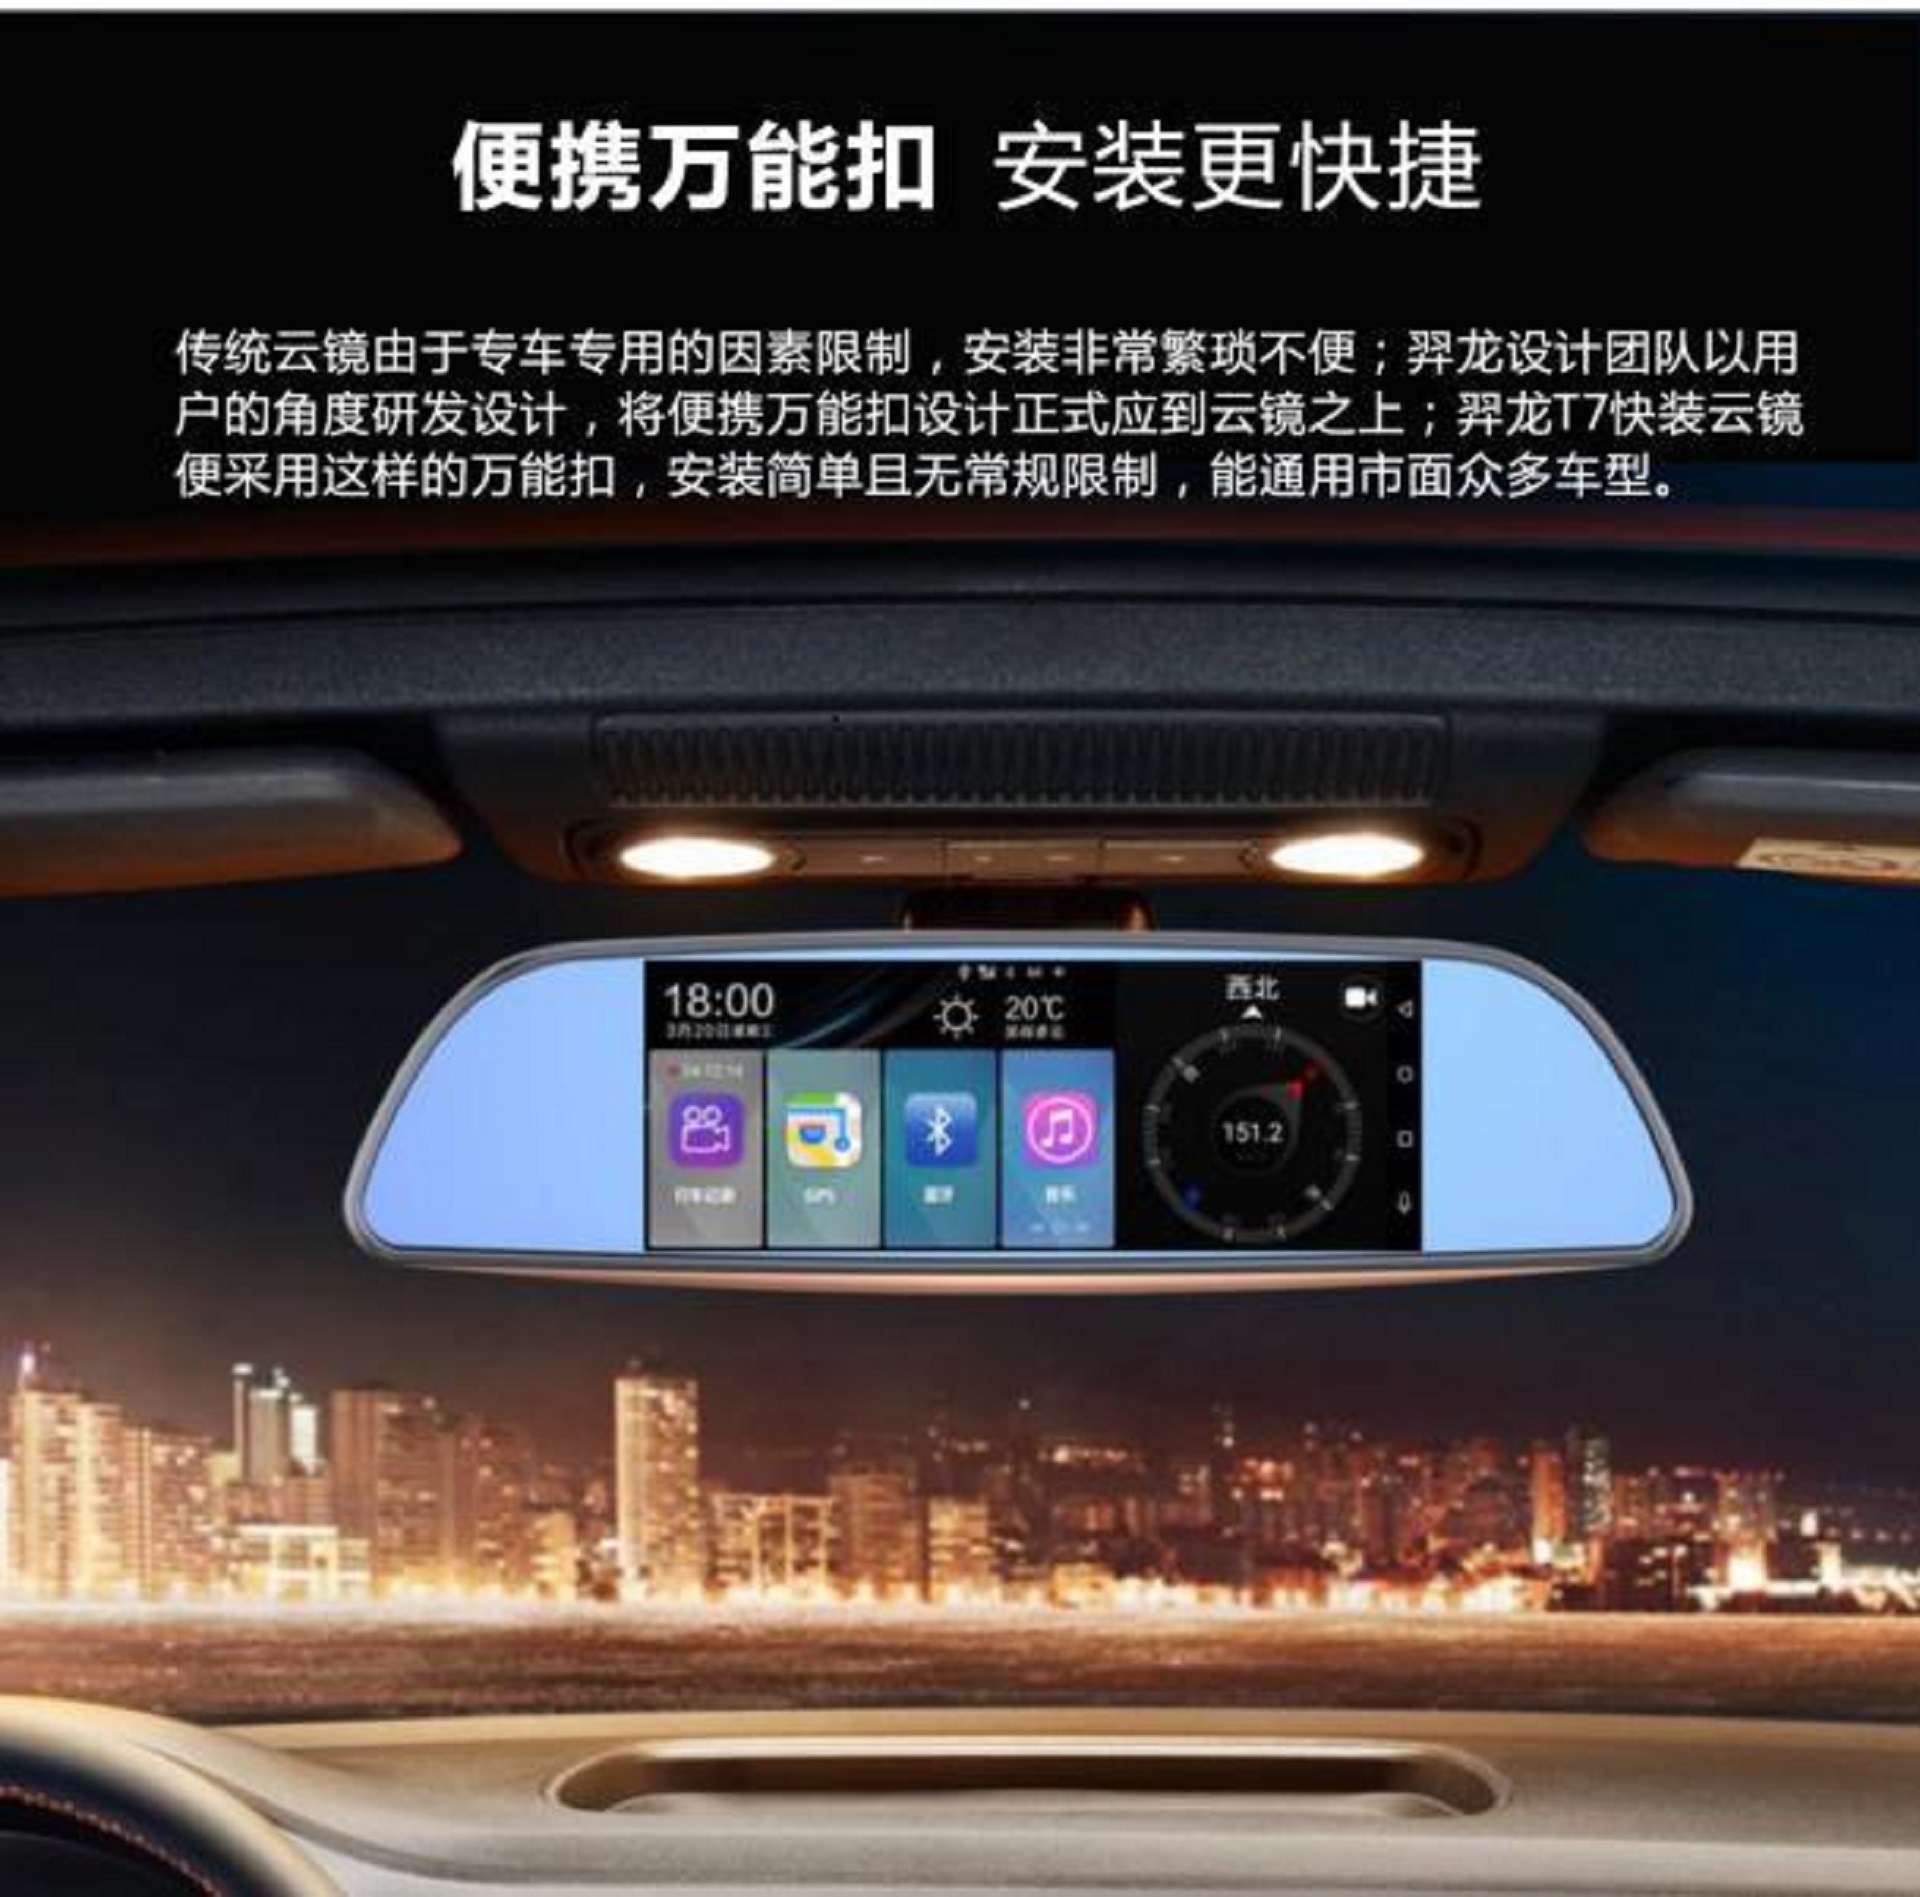 高清行车记录仪3G智能声控导航电子狗一体机 深圳行车记录仪